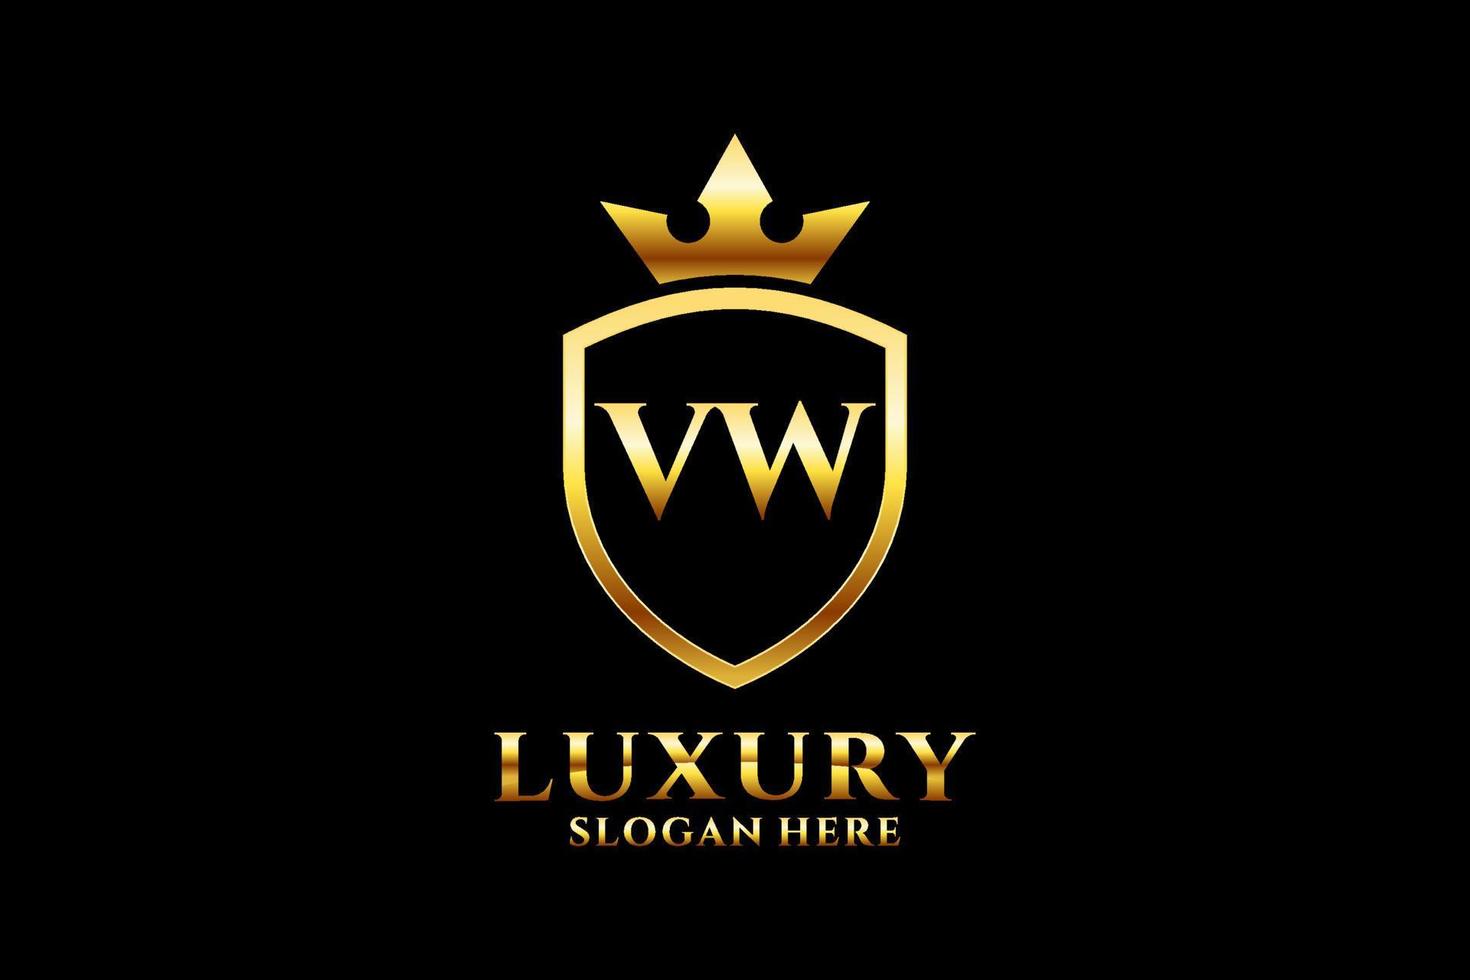 Erstes vw elegantes Luxus-Monogramm-Logo oder Abzeichen-Vorlage mit Schriftrollen und königlicher Krone – perfekt für luxuriöse Branding-Projekte vektor